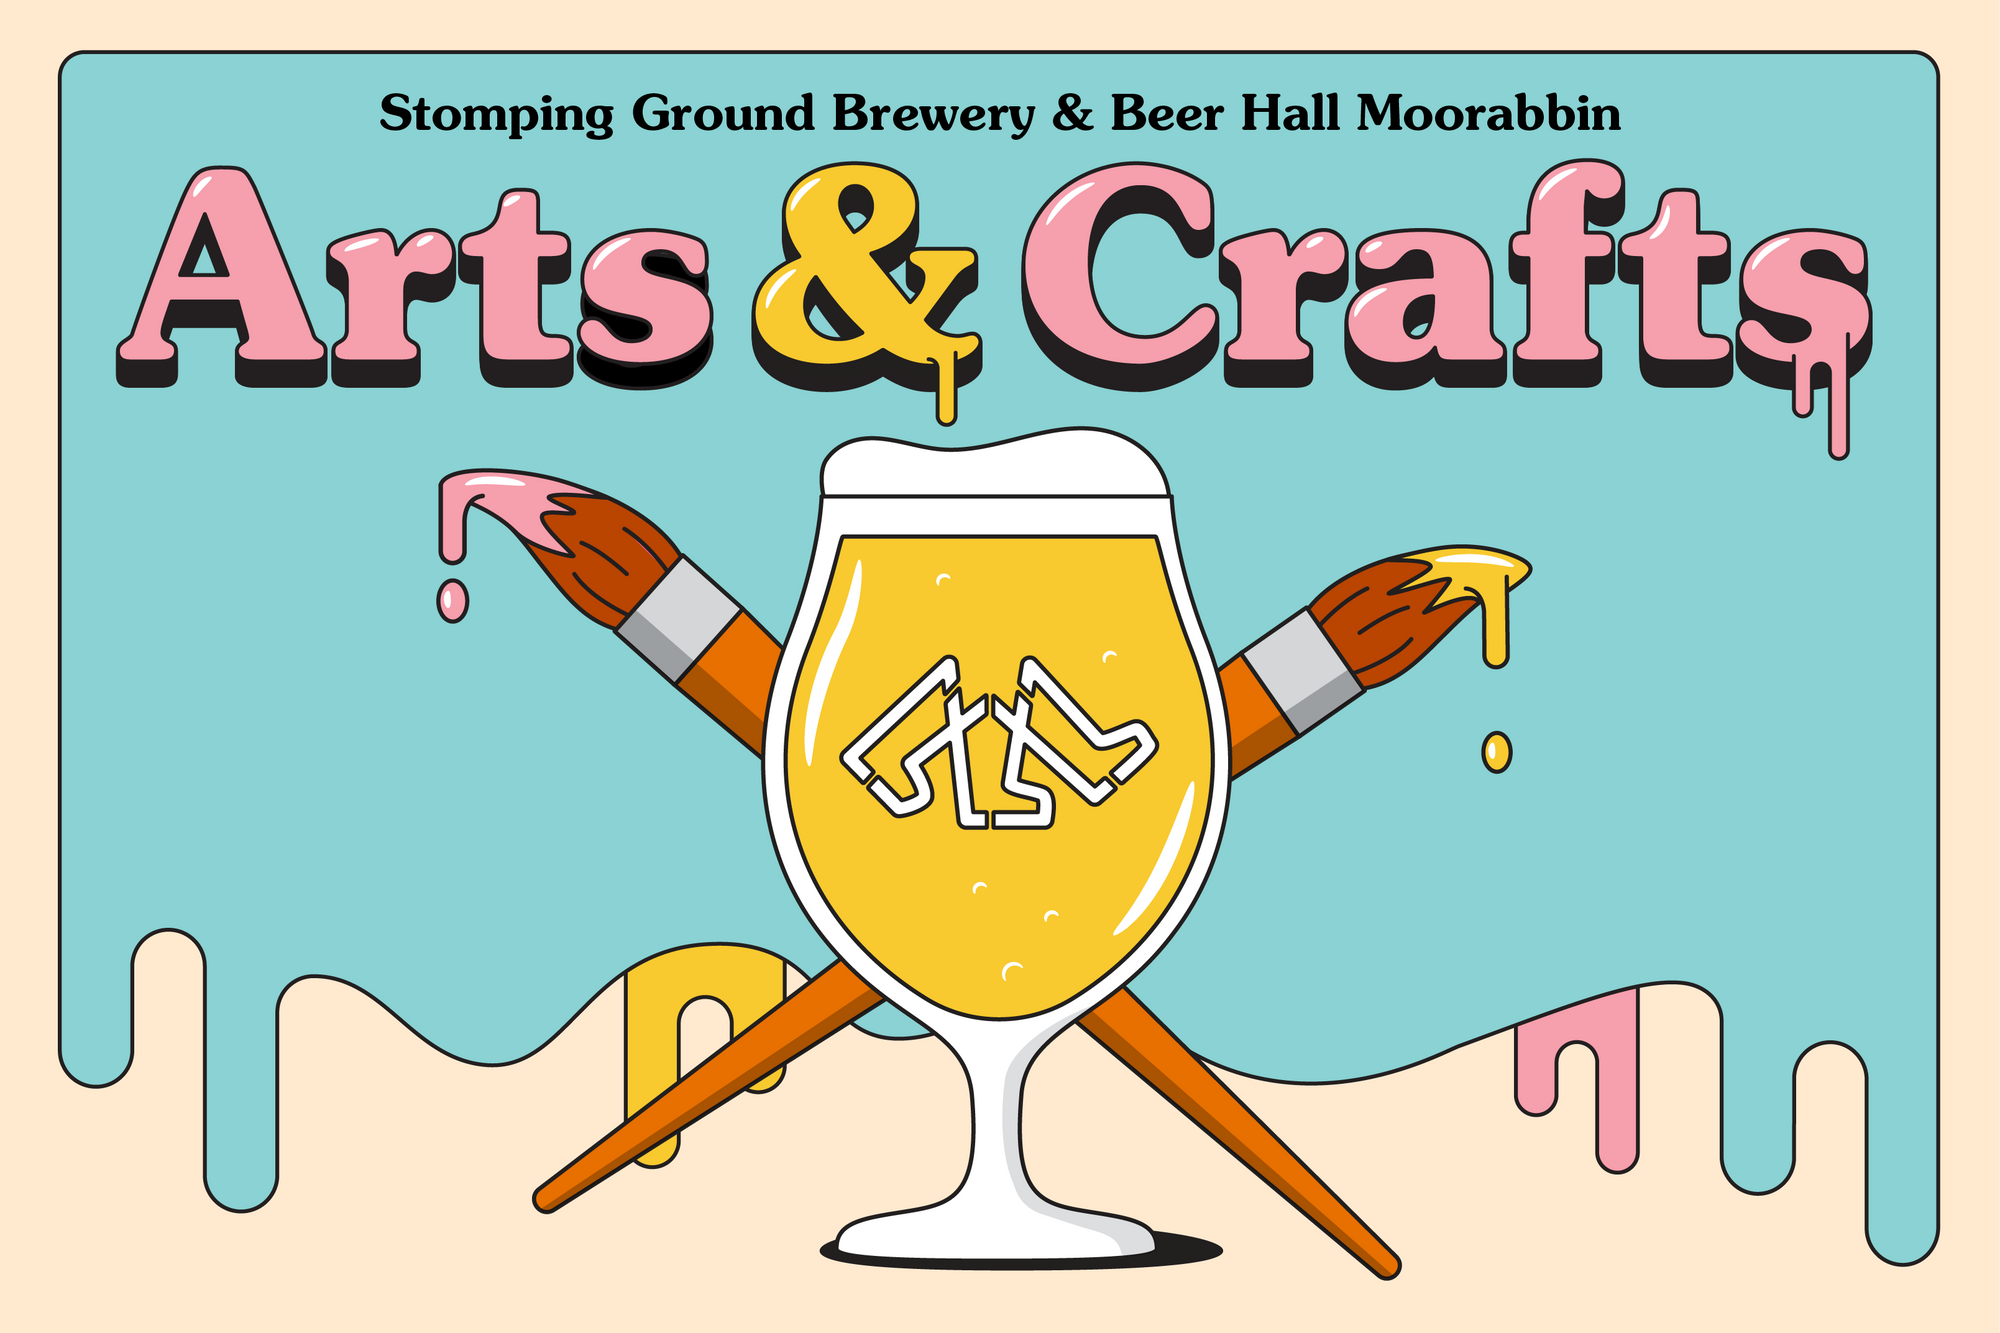 Celebrate Arts & Crafts this Good Beer Week!